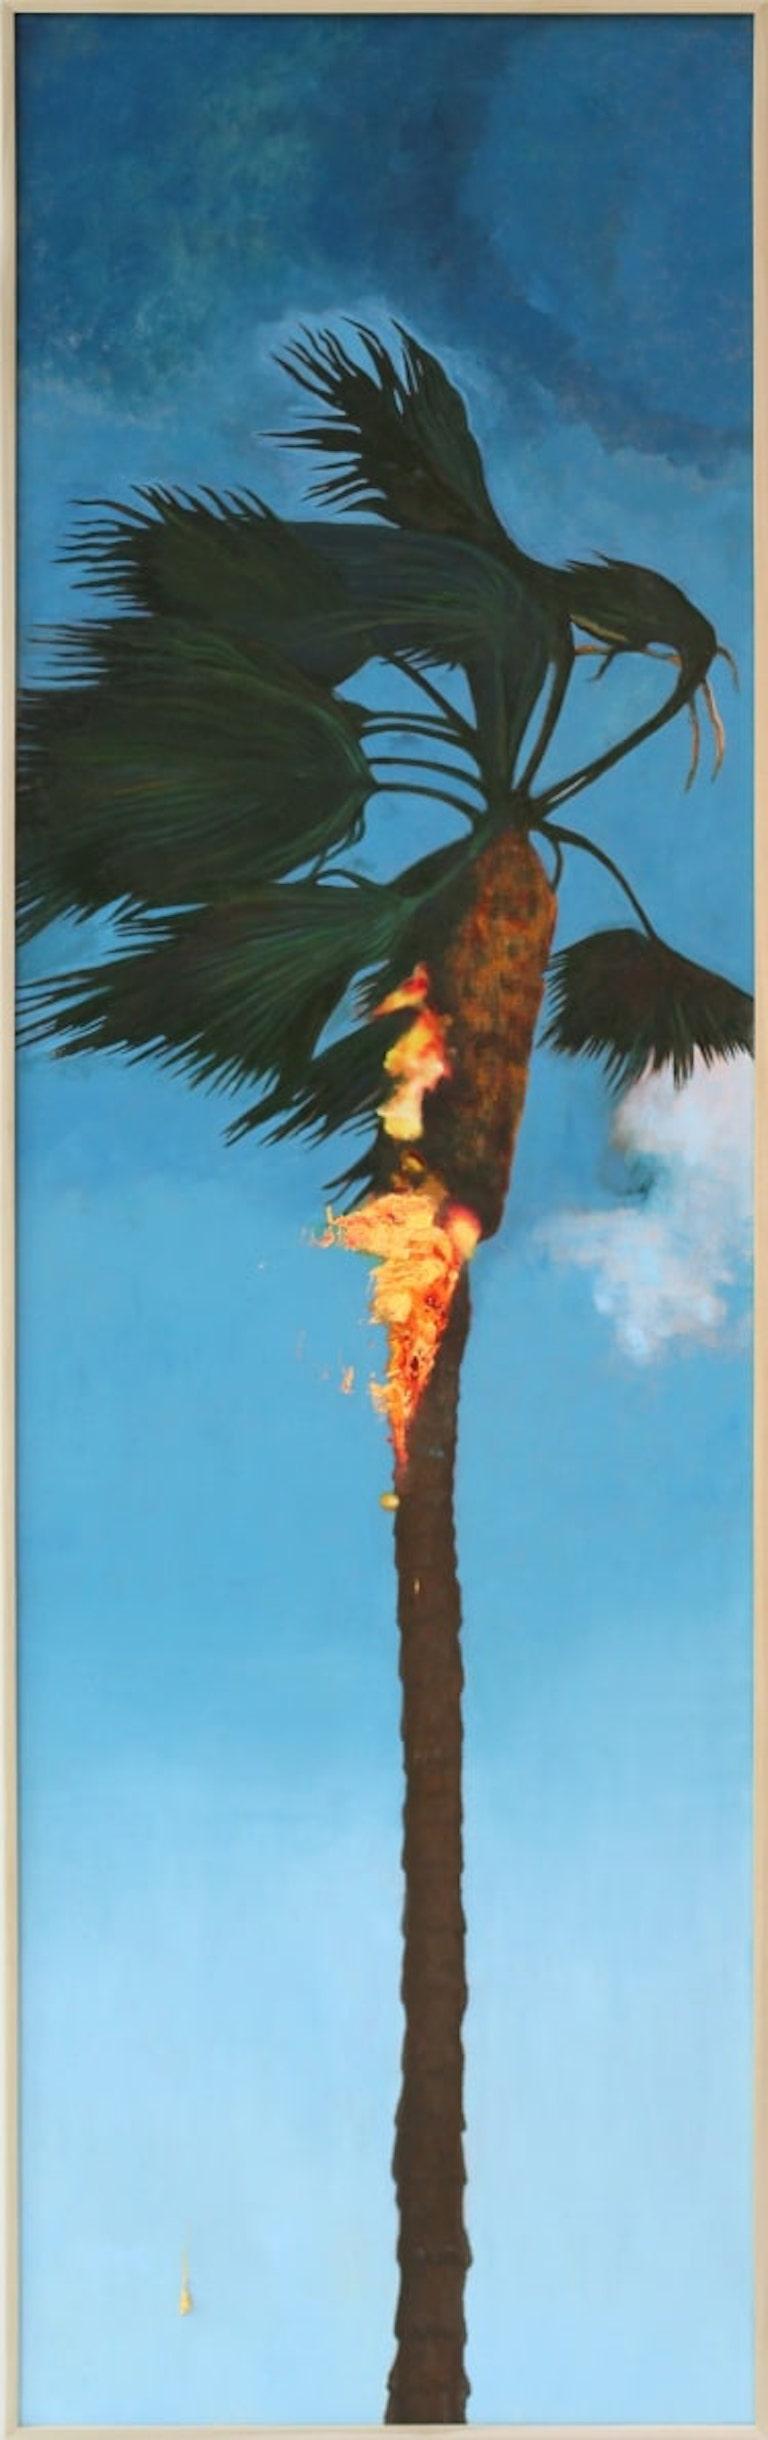 Perry Vàsquez Landscape Painting - Realist Conceptual Oil Painting, "Landscape 3"